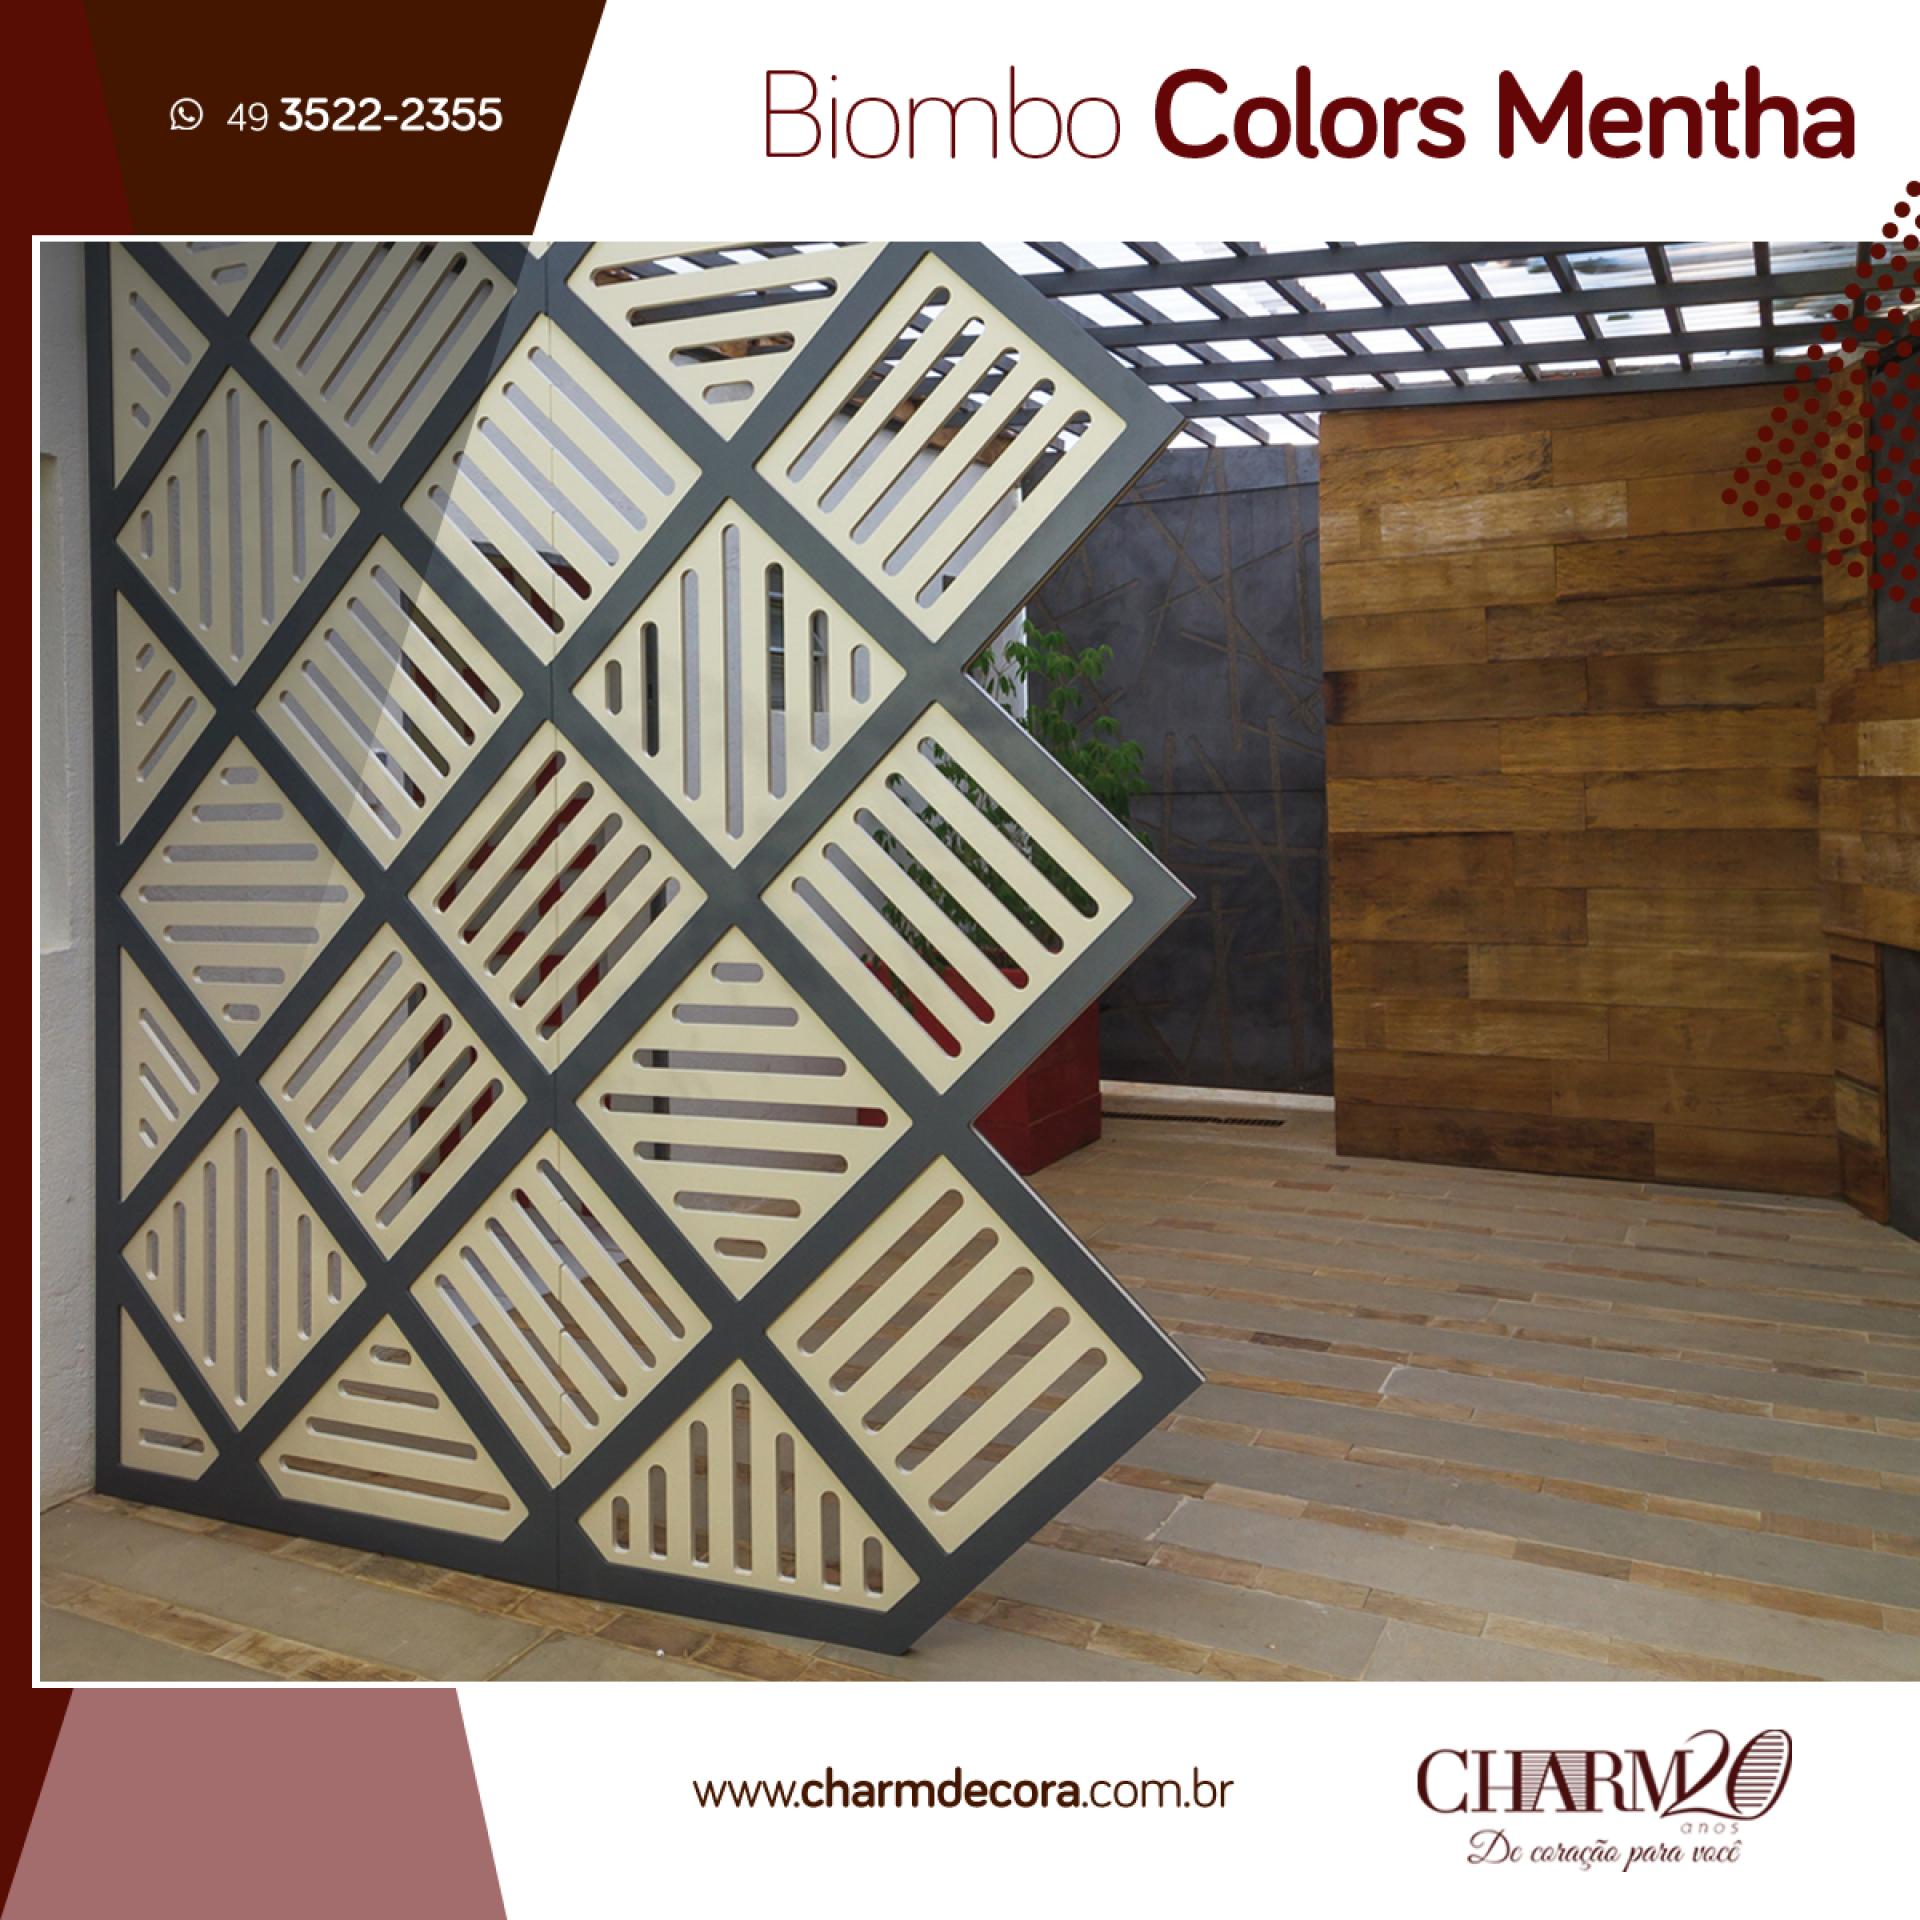 Biombo Colors Mentha